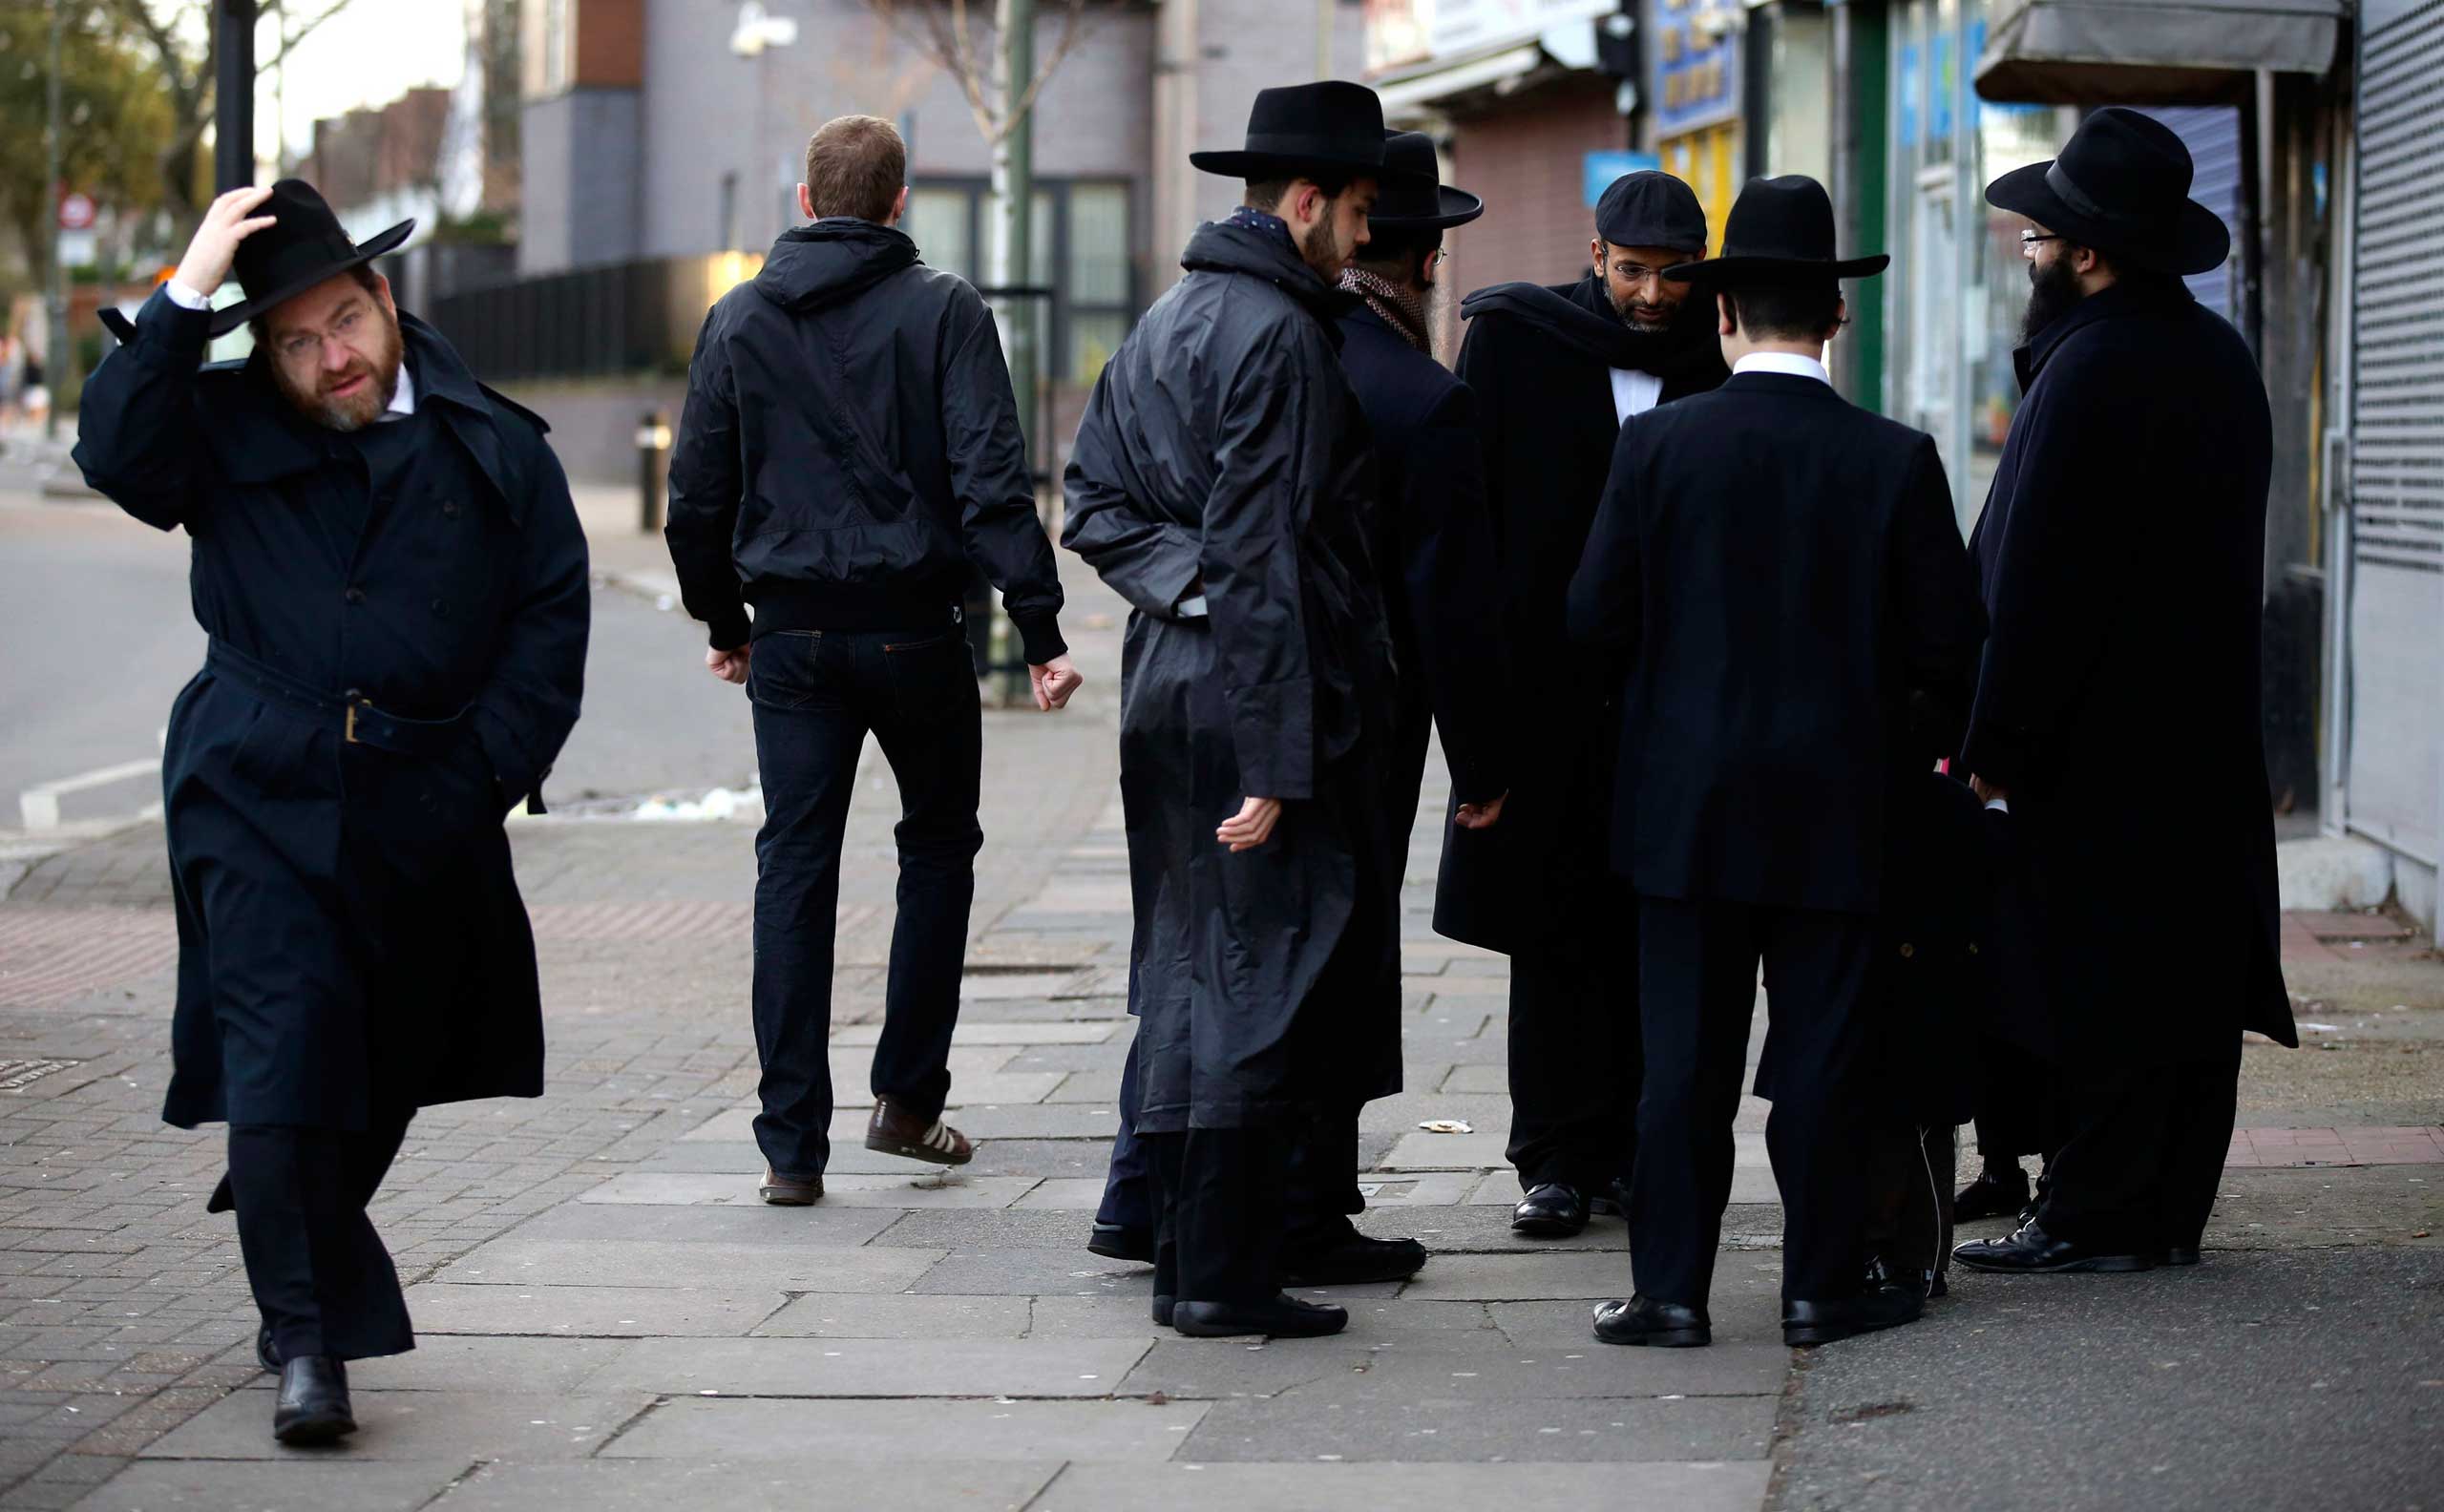 Jewish men talk in Golders Green, London